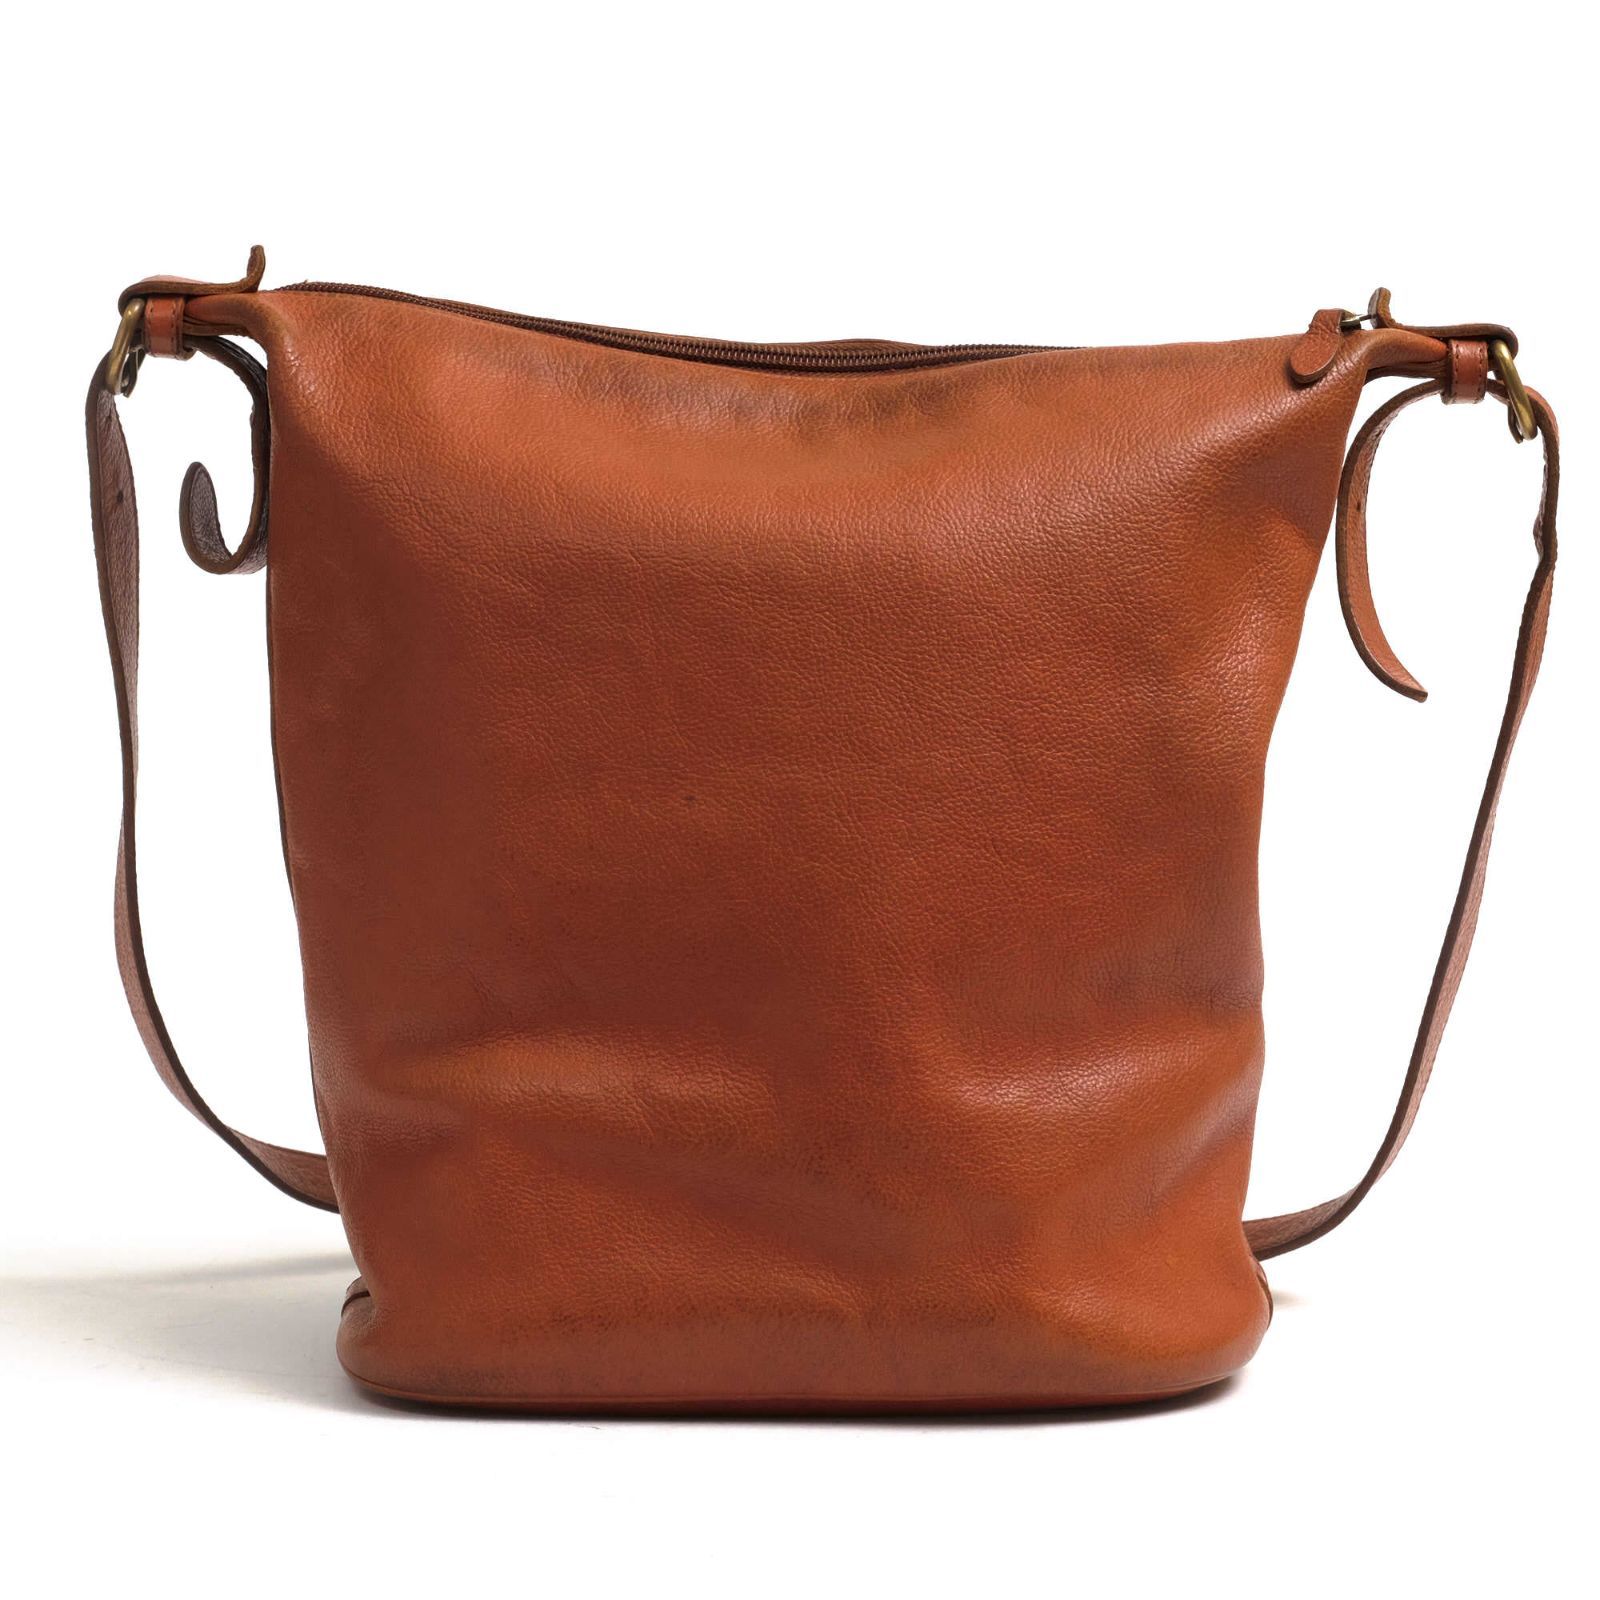 イルビゾンテ／IL BISONTE バッグ ショルダーバッグ 鞄 レディース 女性 女性用レザー 革 本革 ブラウン 茶 410067 バケツ型 -  メルカリ